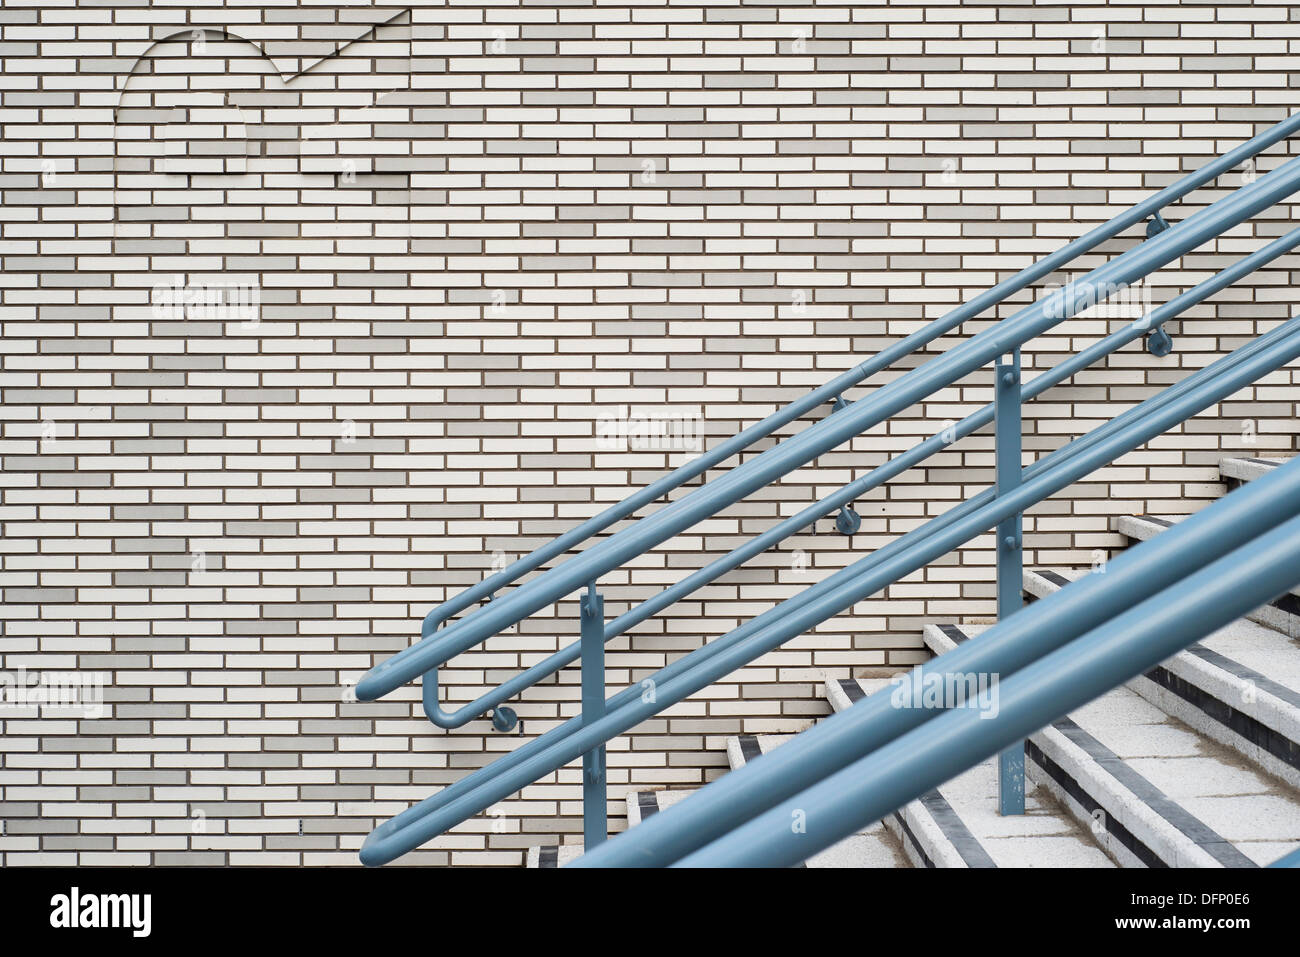 La lettura di stazione ferroviaria, Reading, Regno Unito. Architetto: Grimshaw, 2015. Dettaglio in muratura con scalinata. Foto Stock